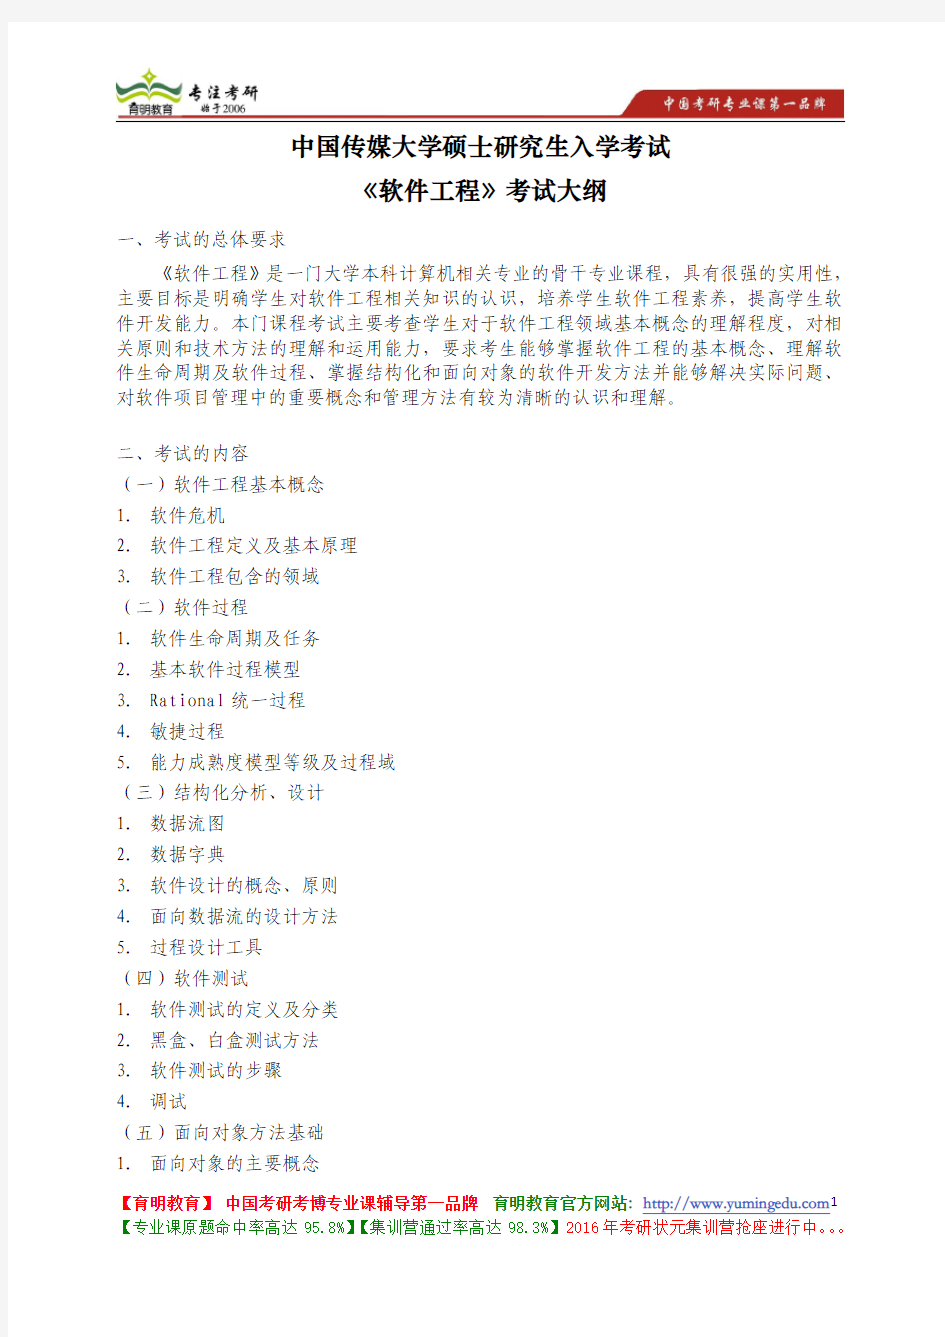 中国传媒大学 822《软件工程》考试大纲 考试题型 考试内容